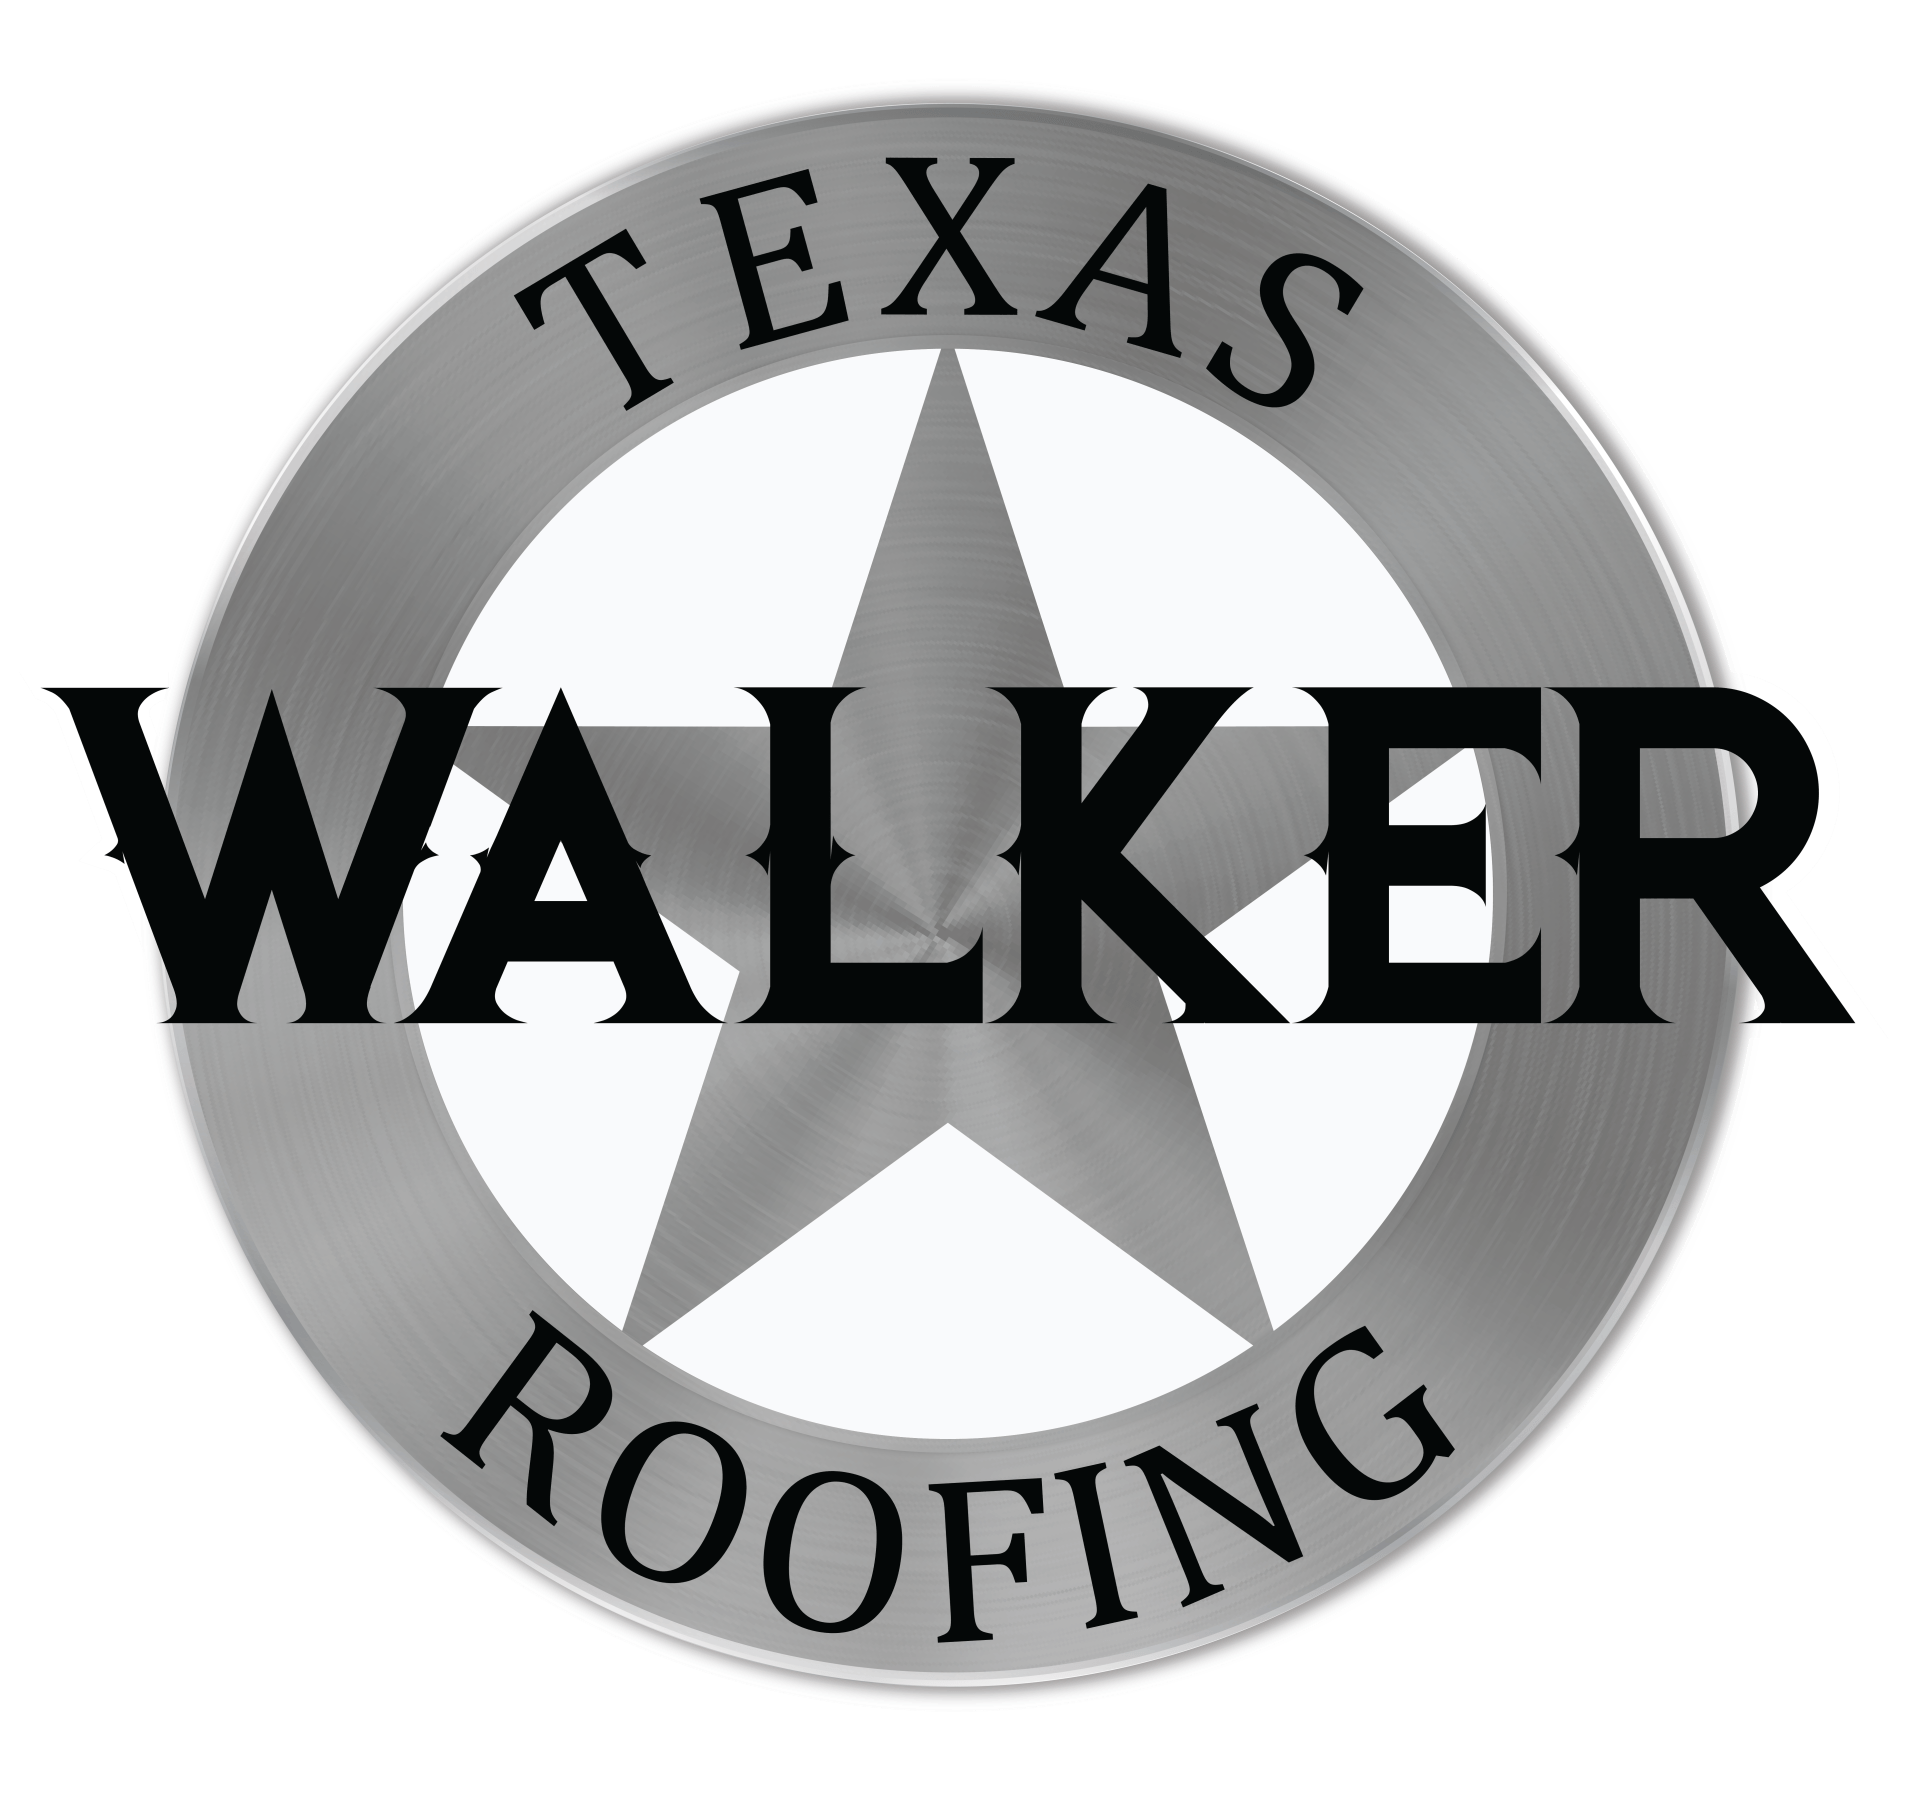 Greg Walker Roofing & Remodeling, LLC